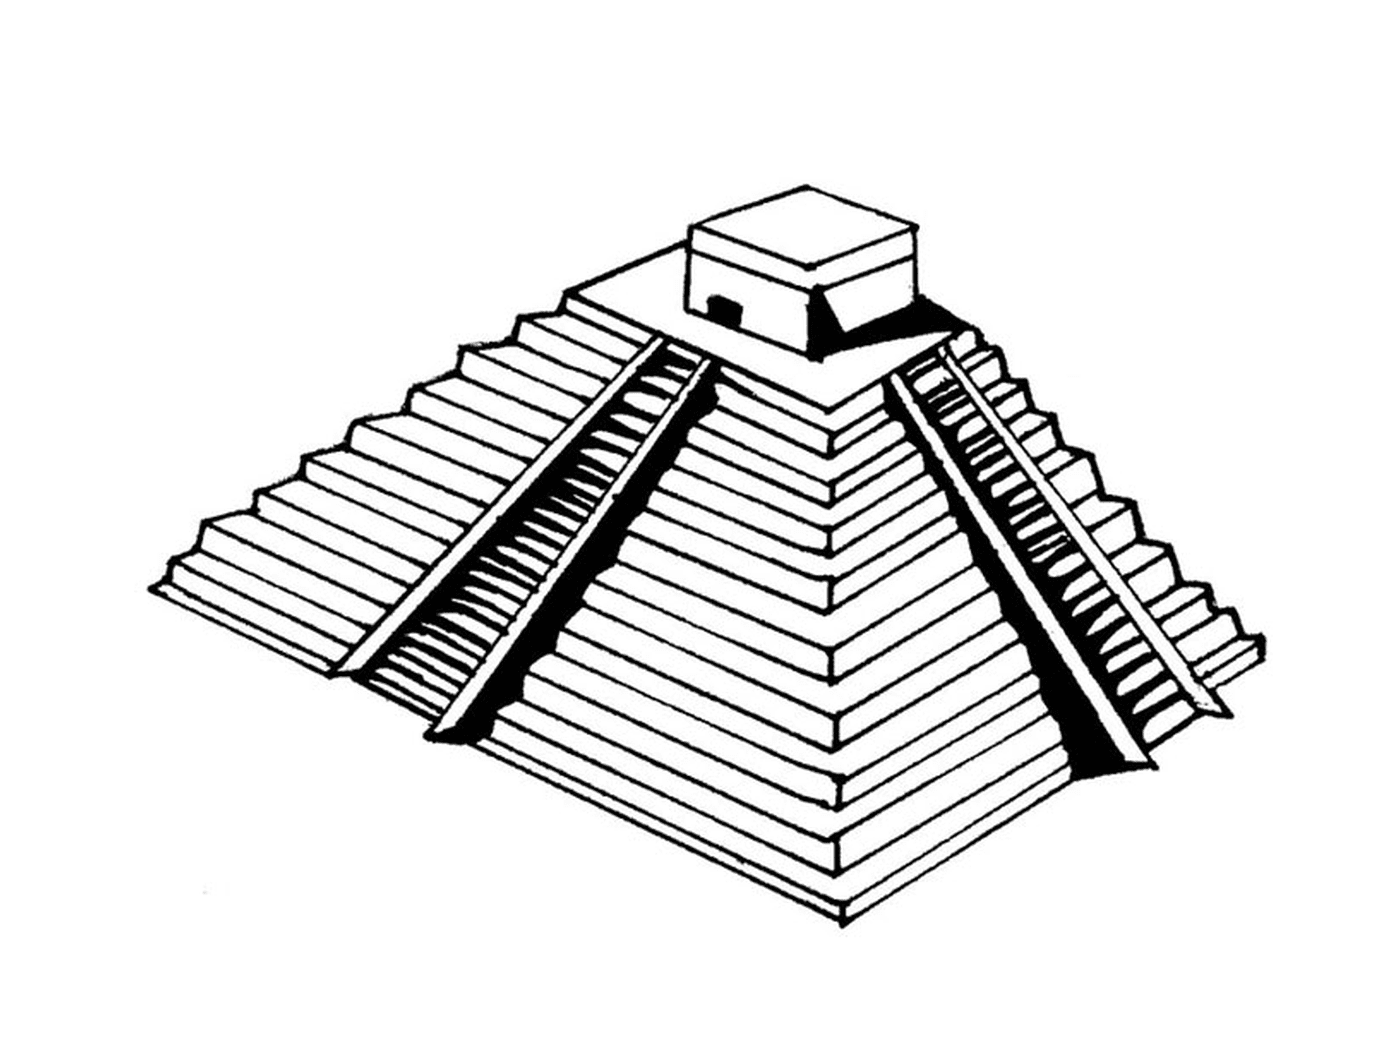  Pyramide mit einer Plattform 